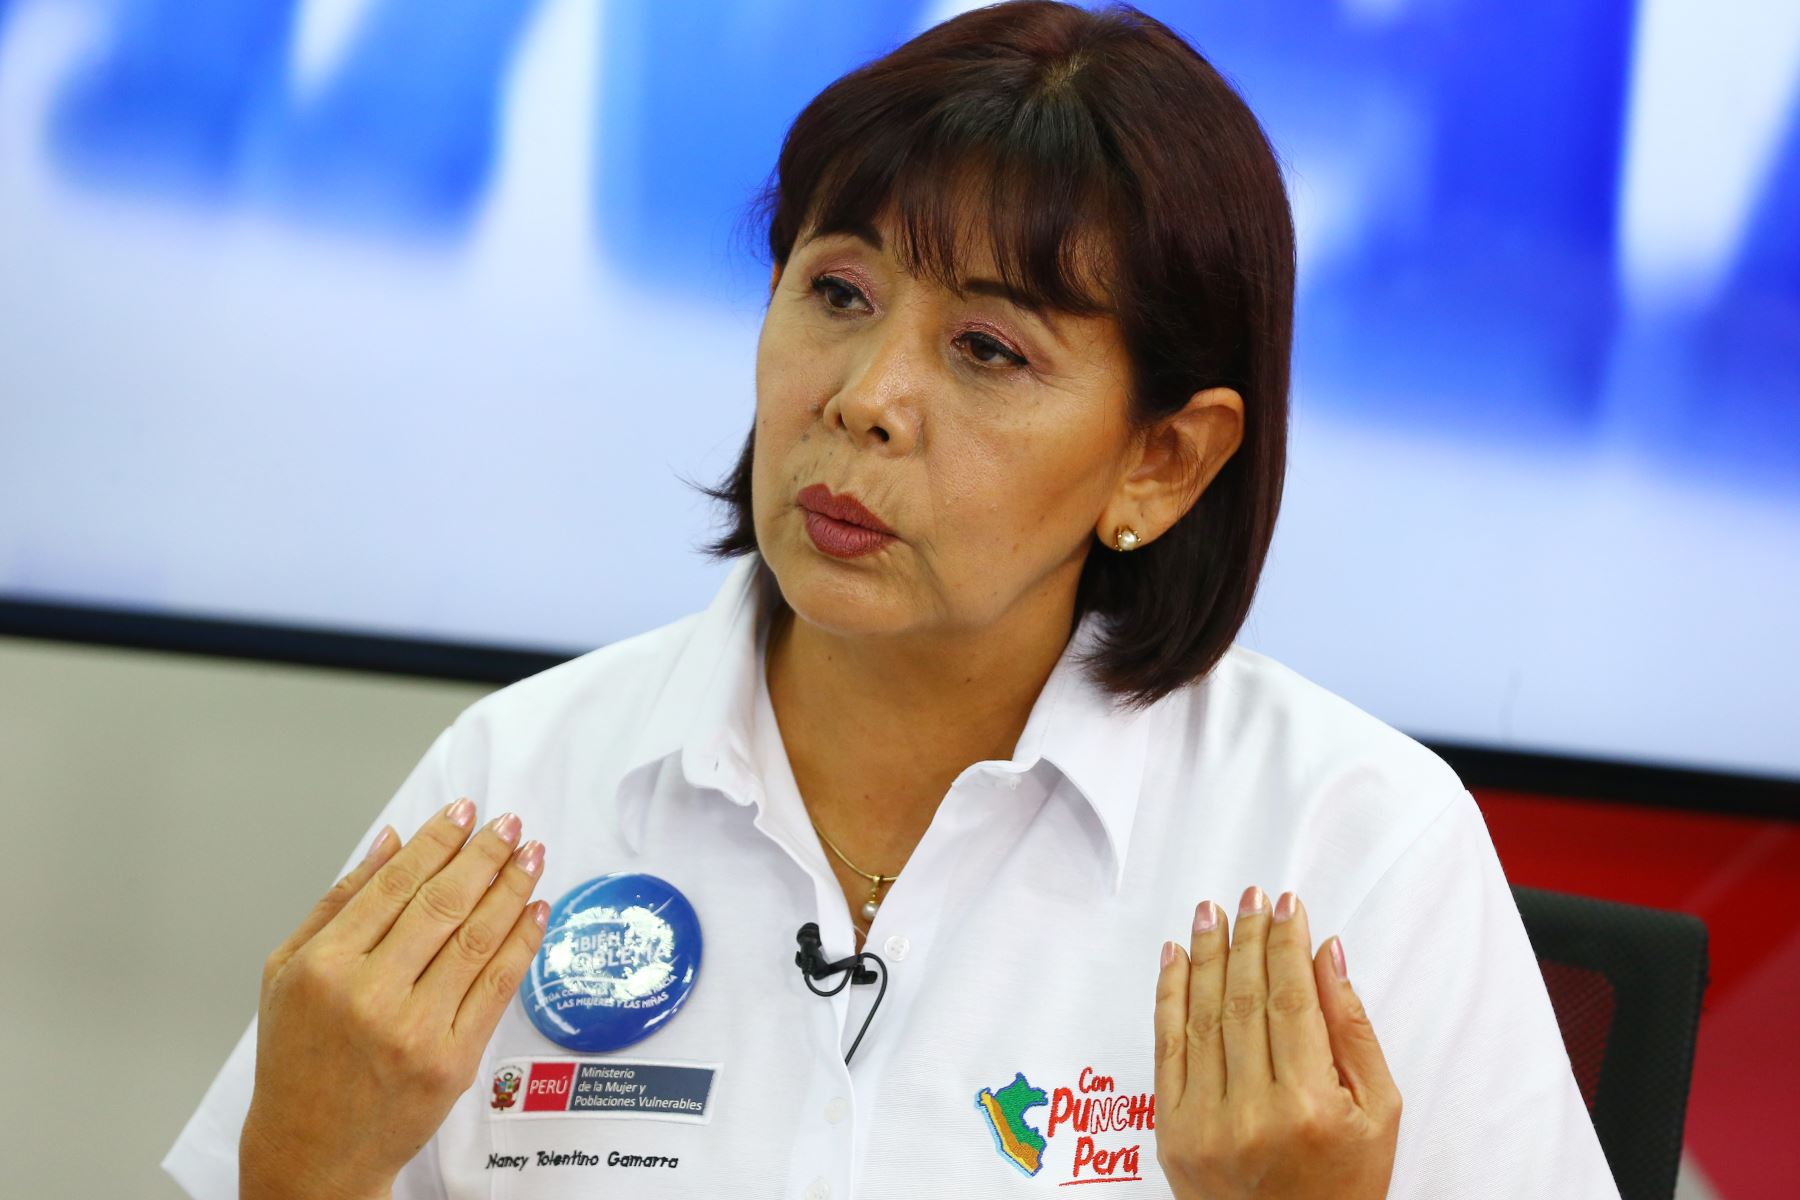 Ministra de la Mujer y Poblaciones Vulnerables, Nancy Tolentino Gamarra. Foto: ANDINA/Eddy Ramos